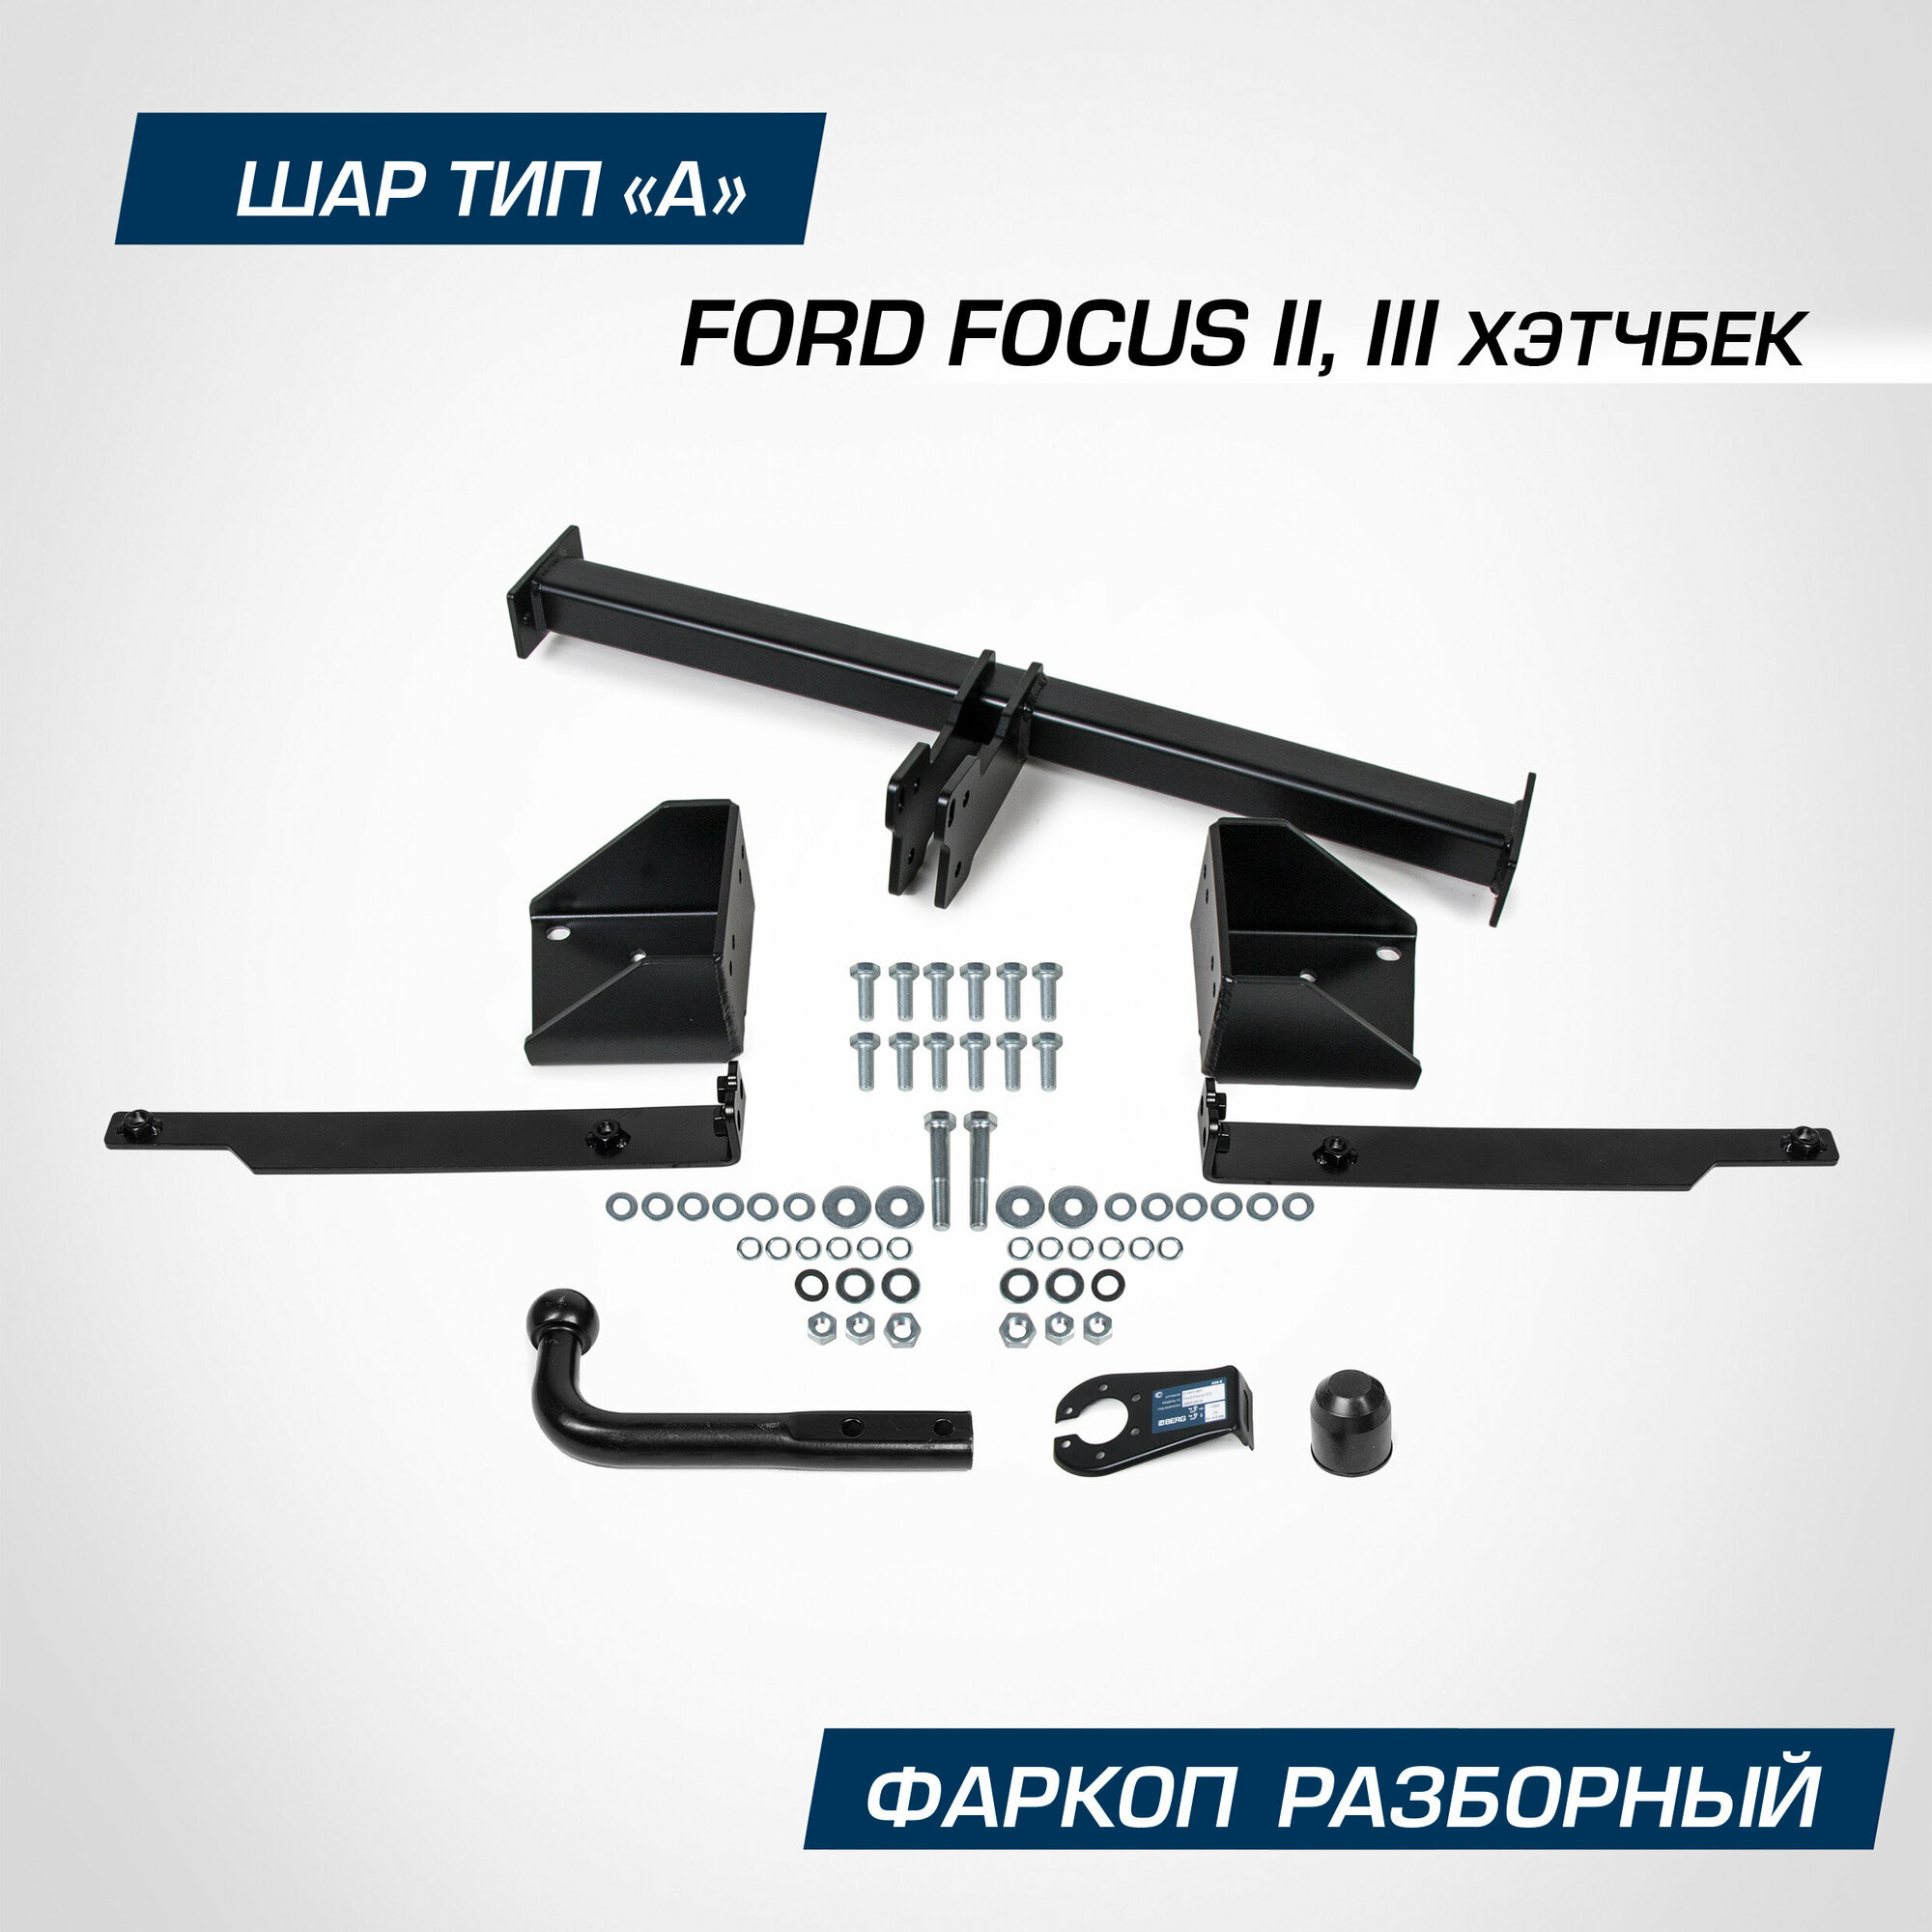 Фаркоп Berg для Ford Focus хэтчбек II, III поколение 2005-2019, шар А, 1500/75 кг, F.1812.001